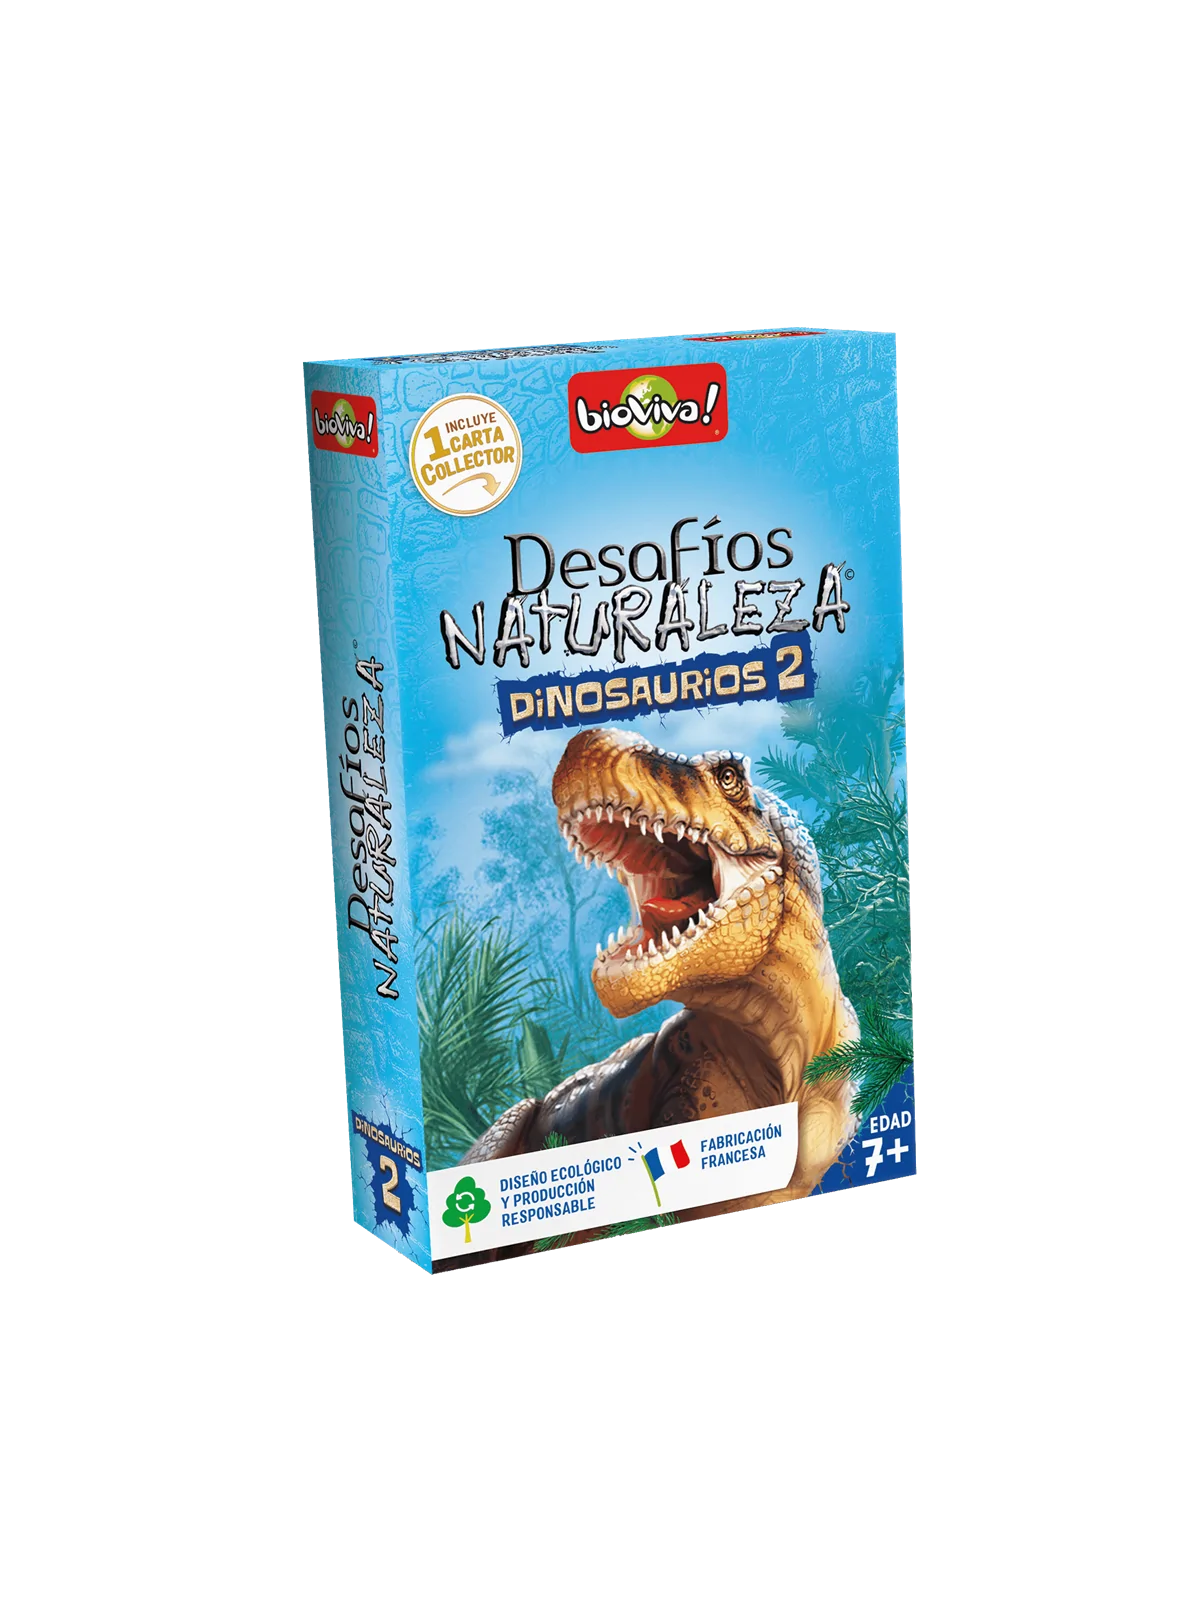 Comprar Desafíos Naturaleza: Dinosaurios II barato al mejor precio 9,4